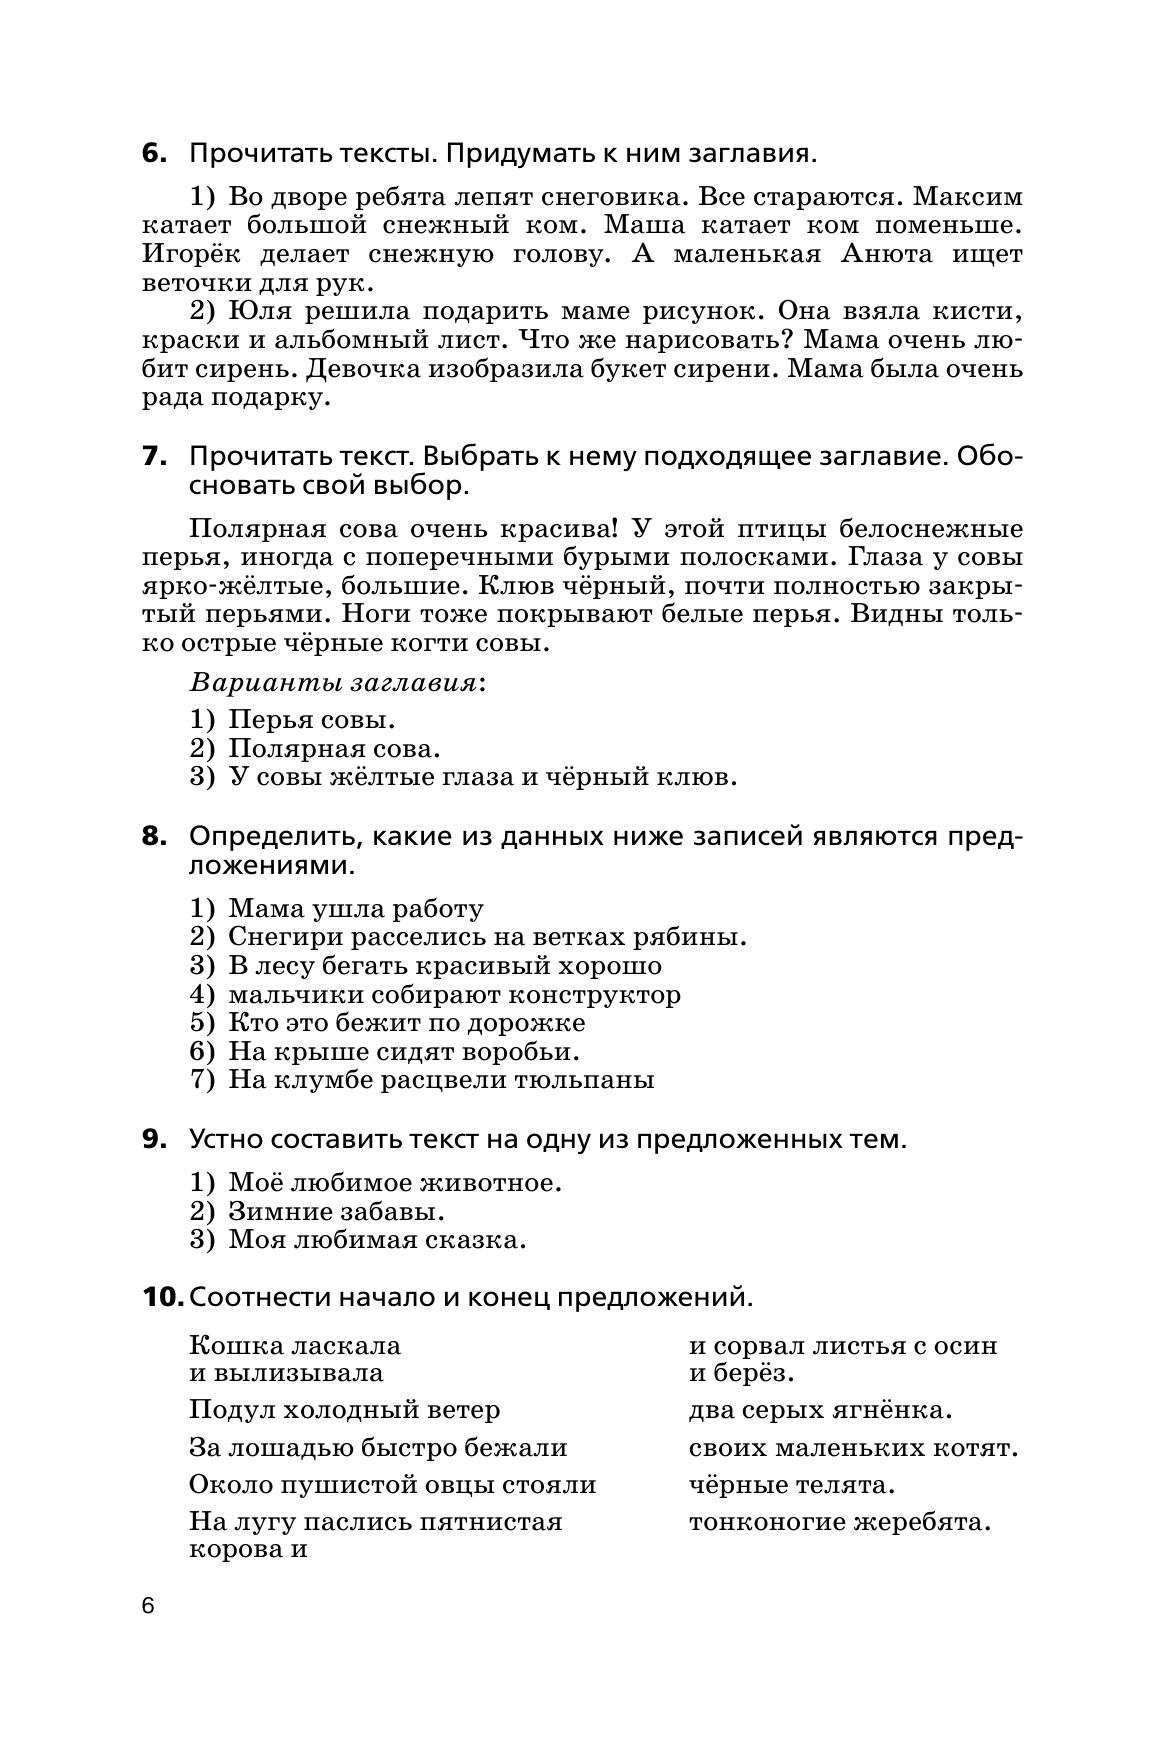 Русский язык. Сборник диктантов и творческих работ. 1-2 классы 9